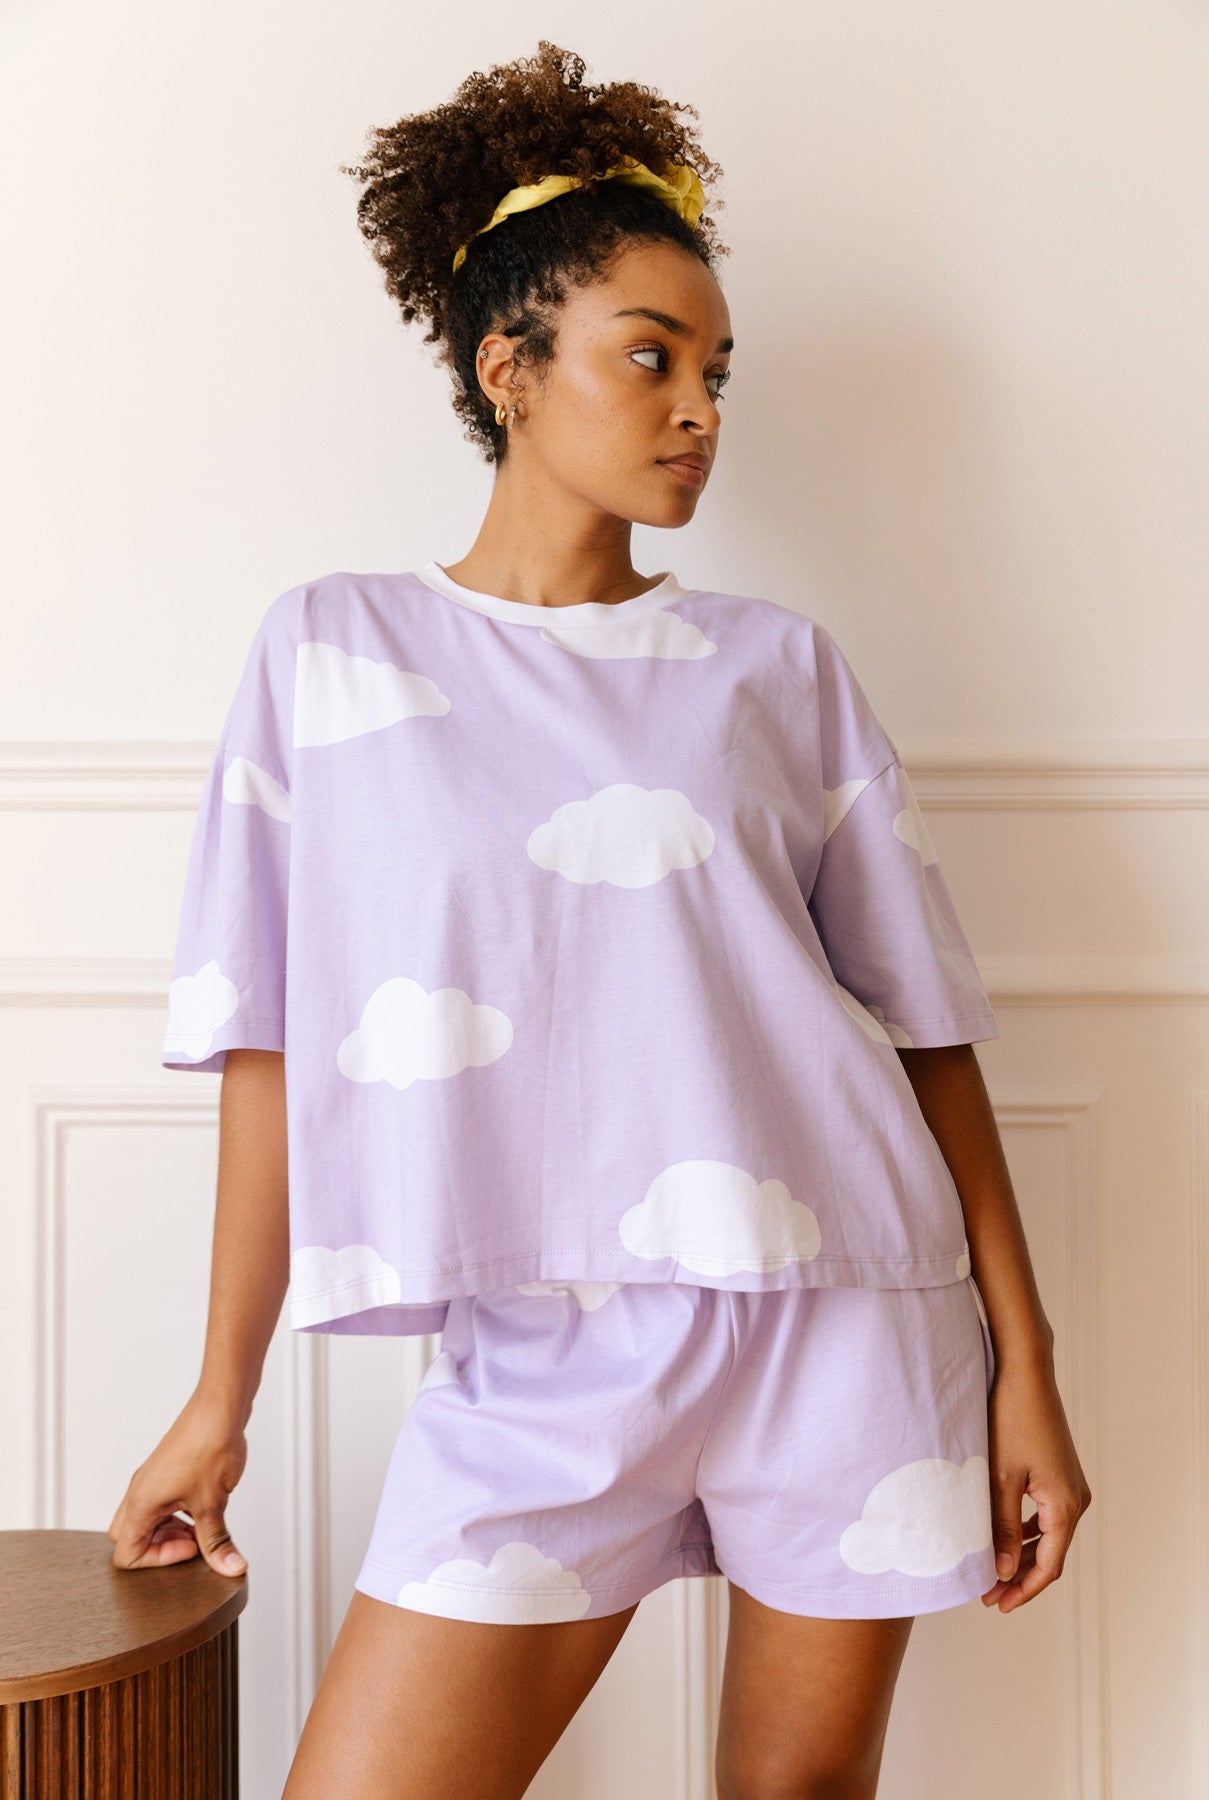 http://wearejolies.com/cdn/shop/files/fiche-produit-femme-jeune-pyjama-motif-nuages-violet-blanc.jpg?v=1697730577